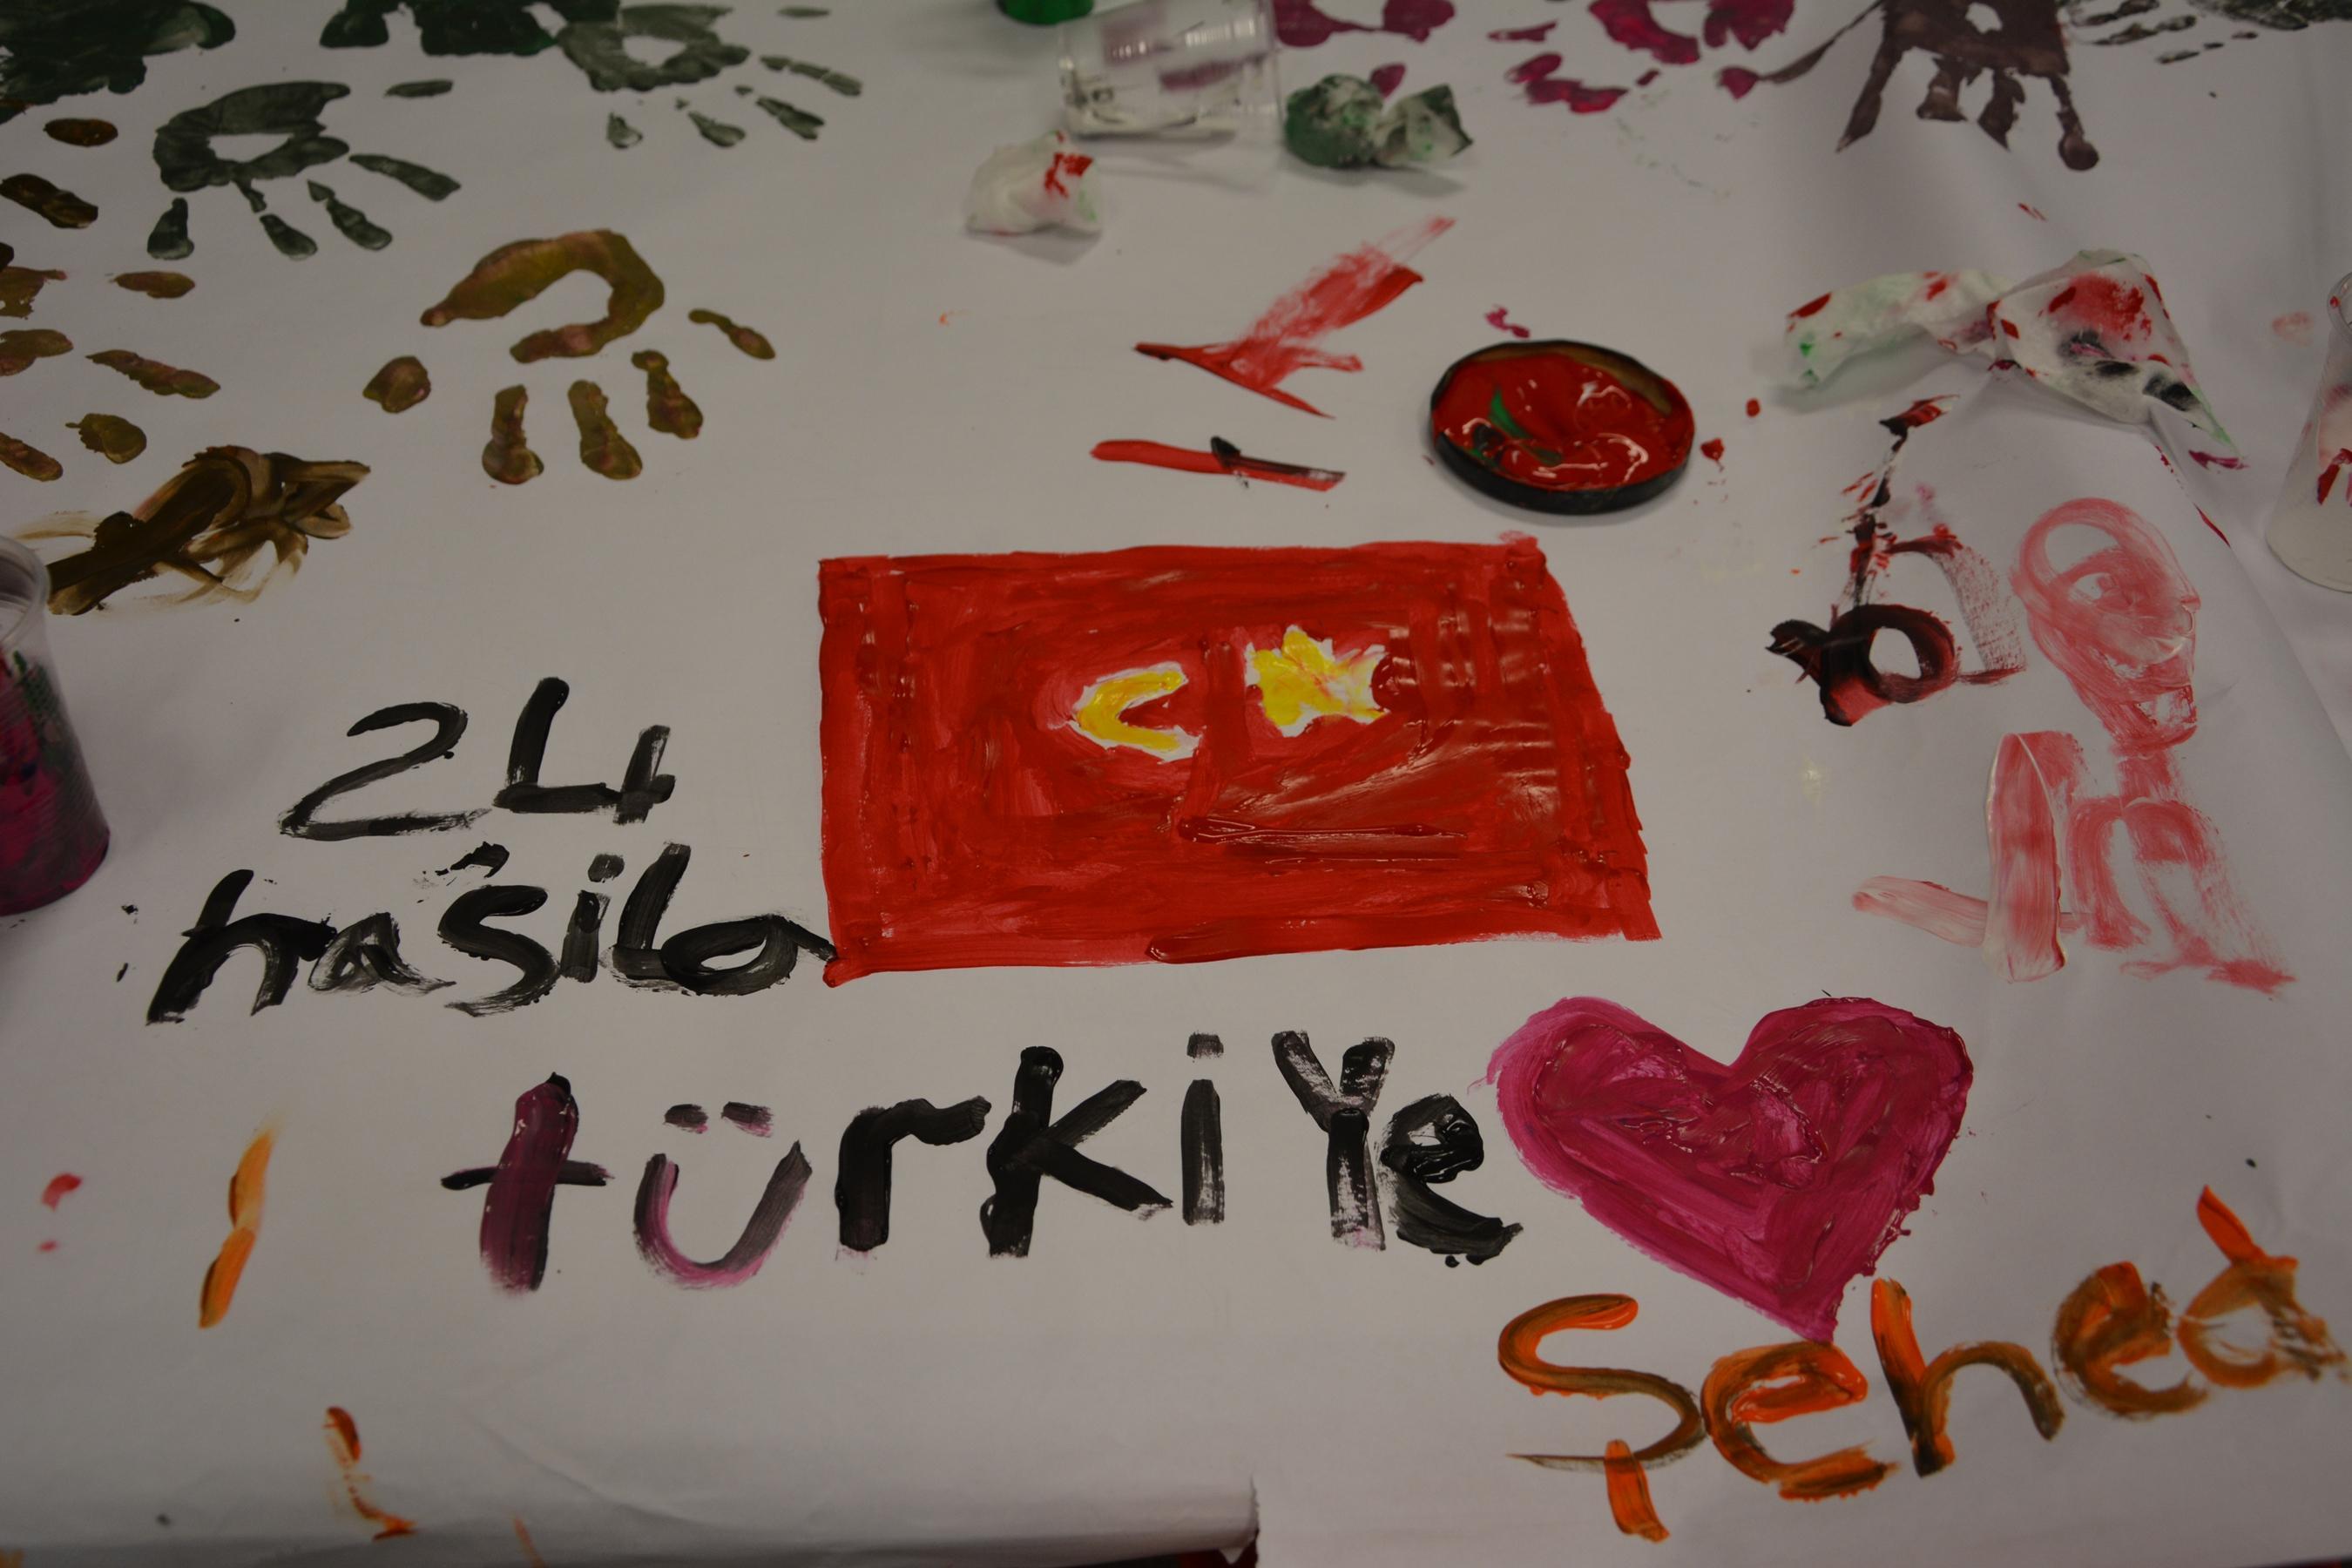 Suriyeli çocukların gözünden Türkiye tuvallere yansıdı